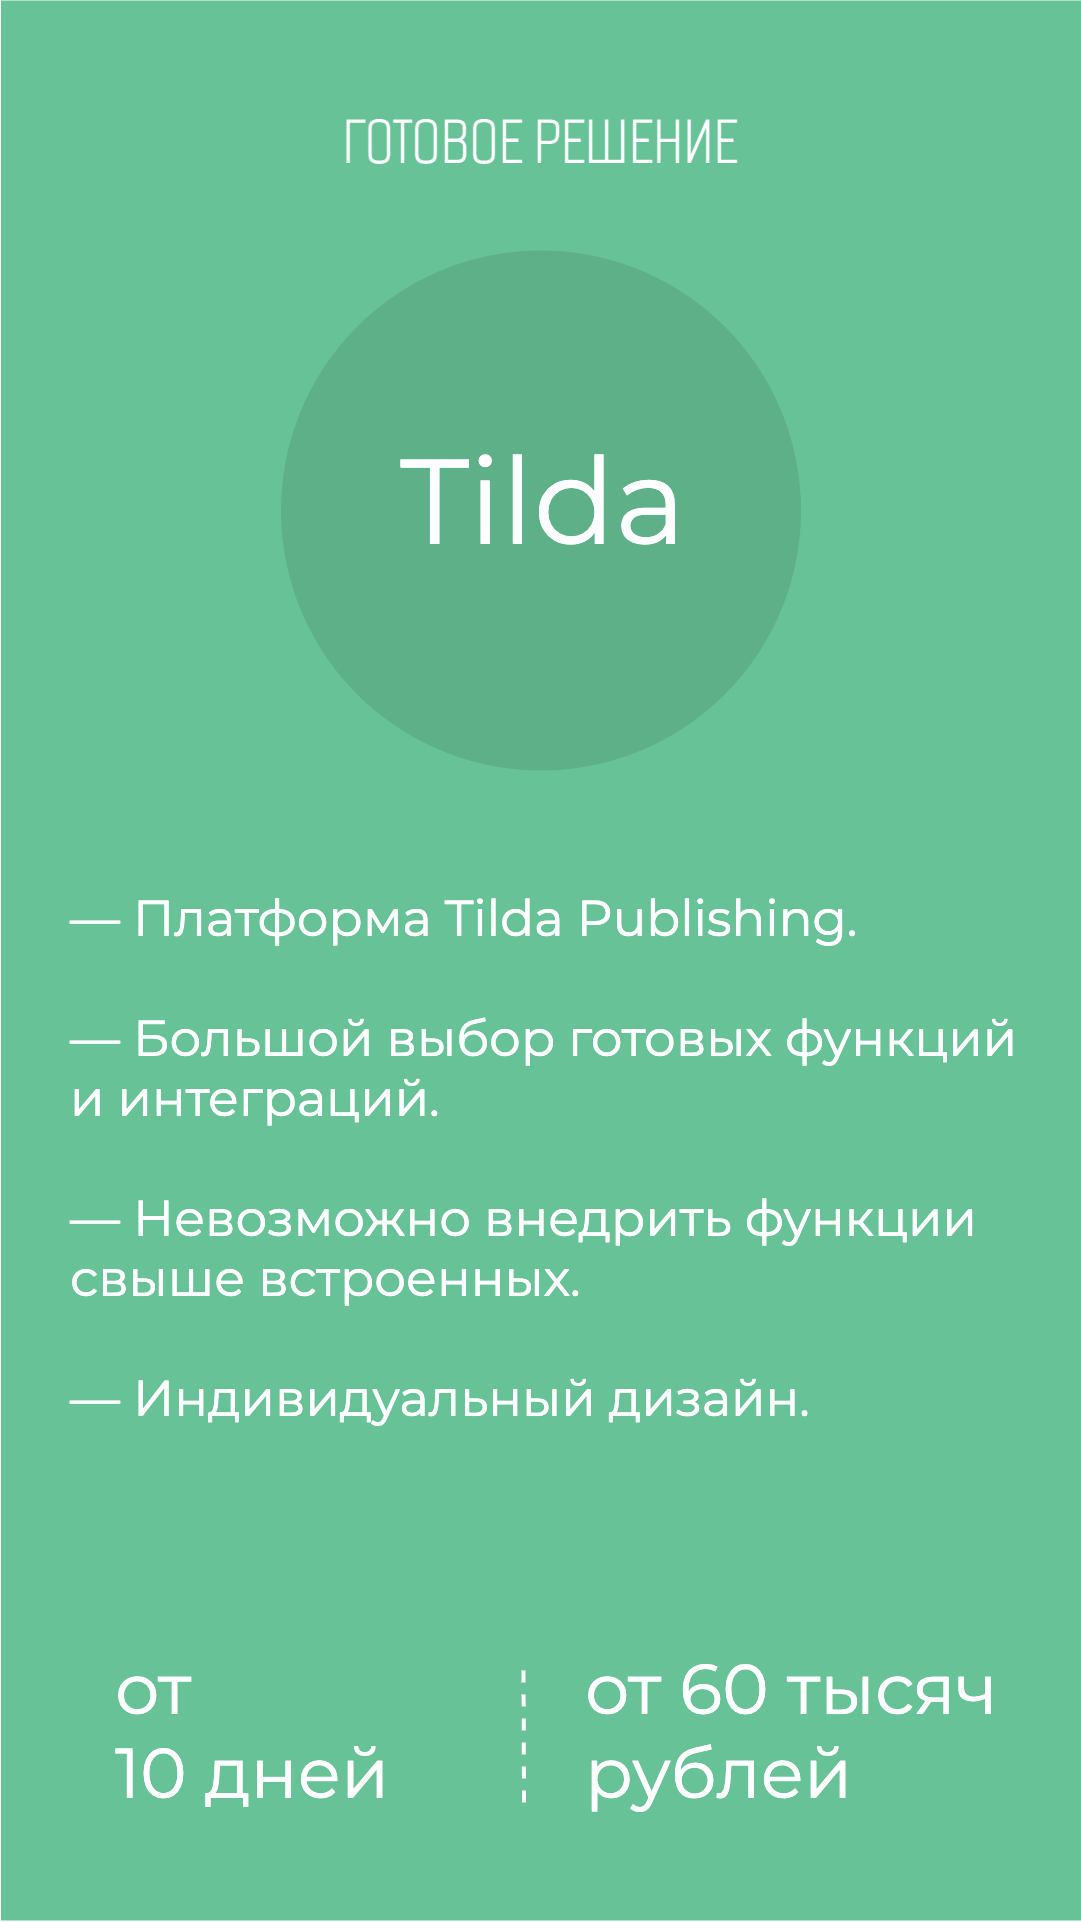 Сколько стоит разработать создать интернет-магазин на Tilda